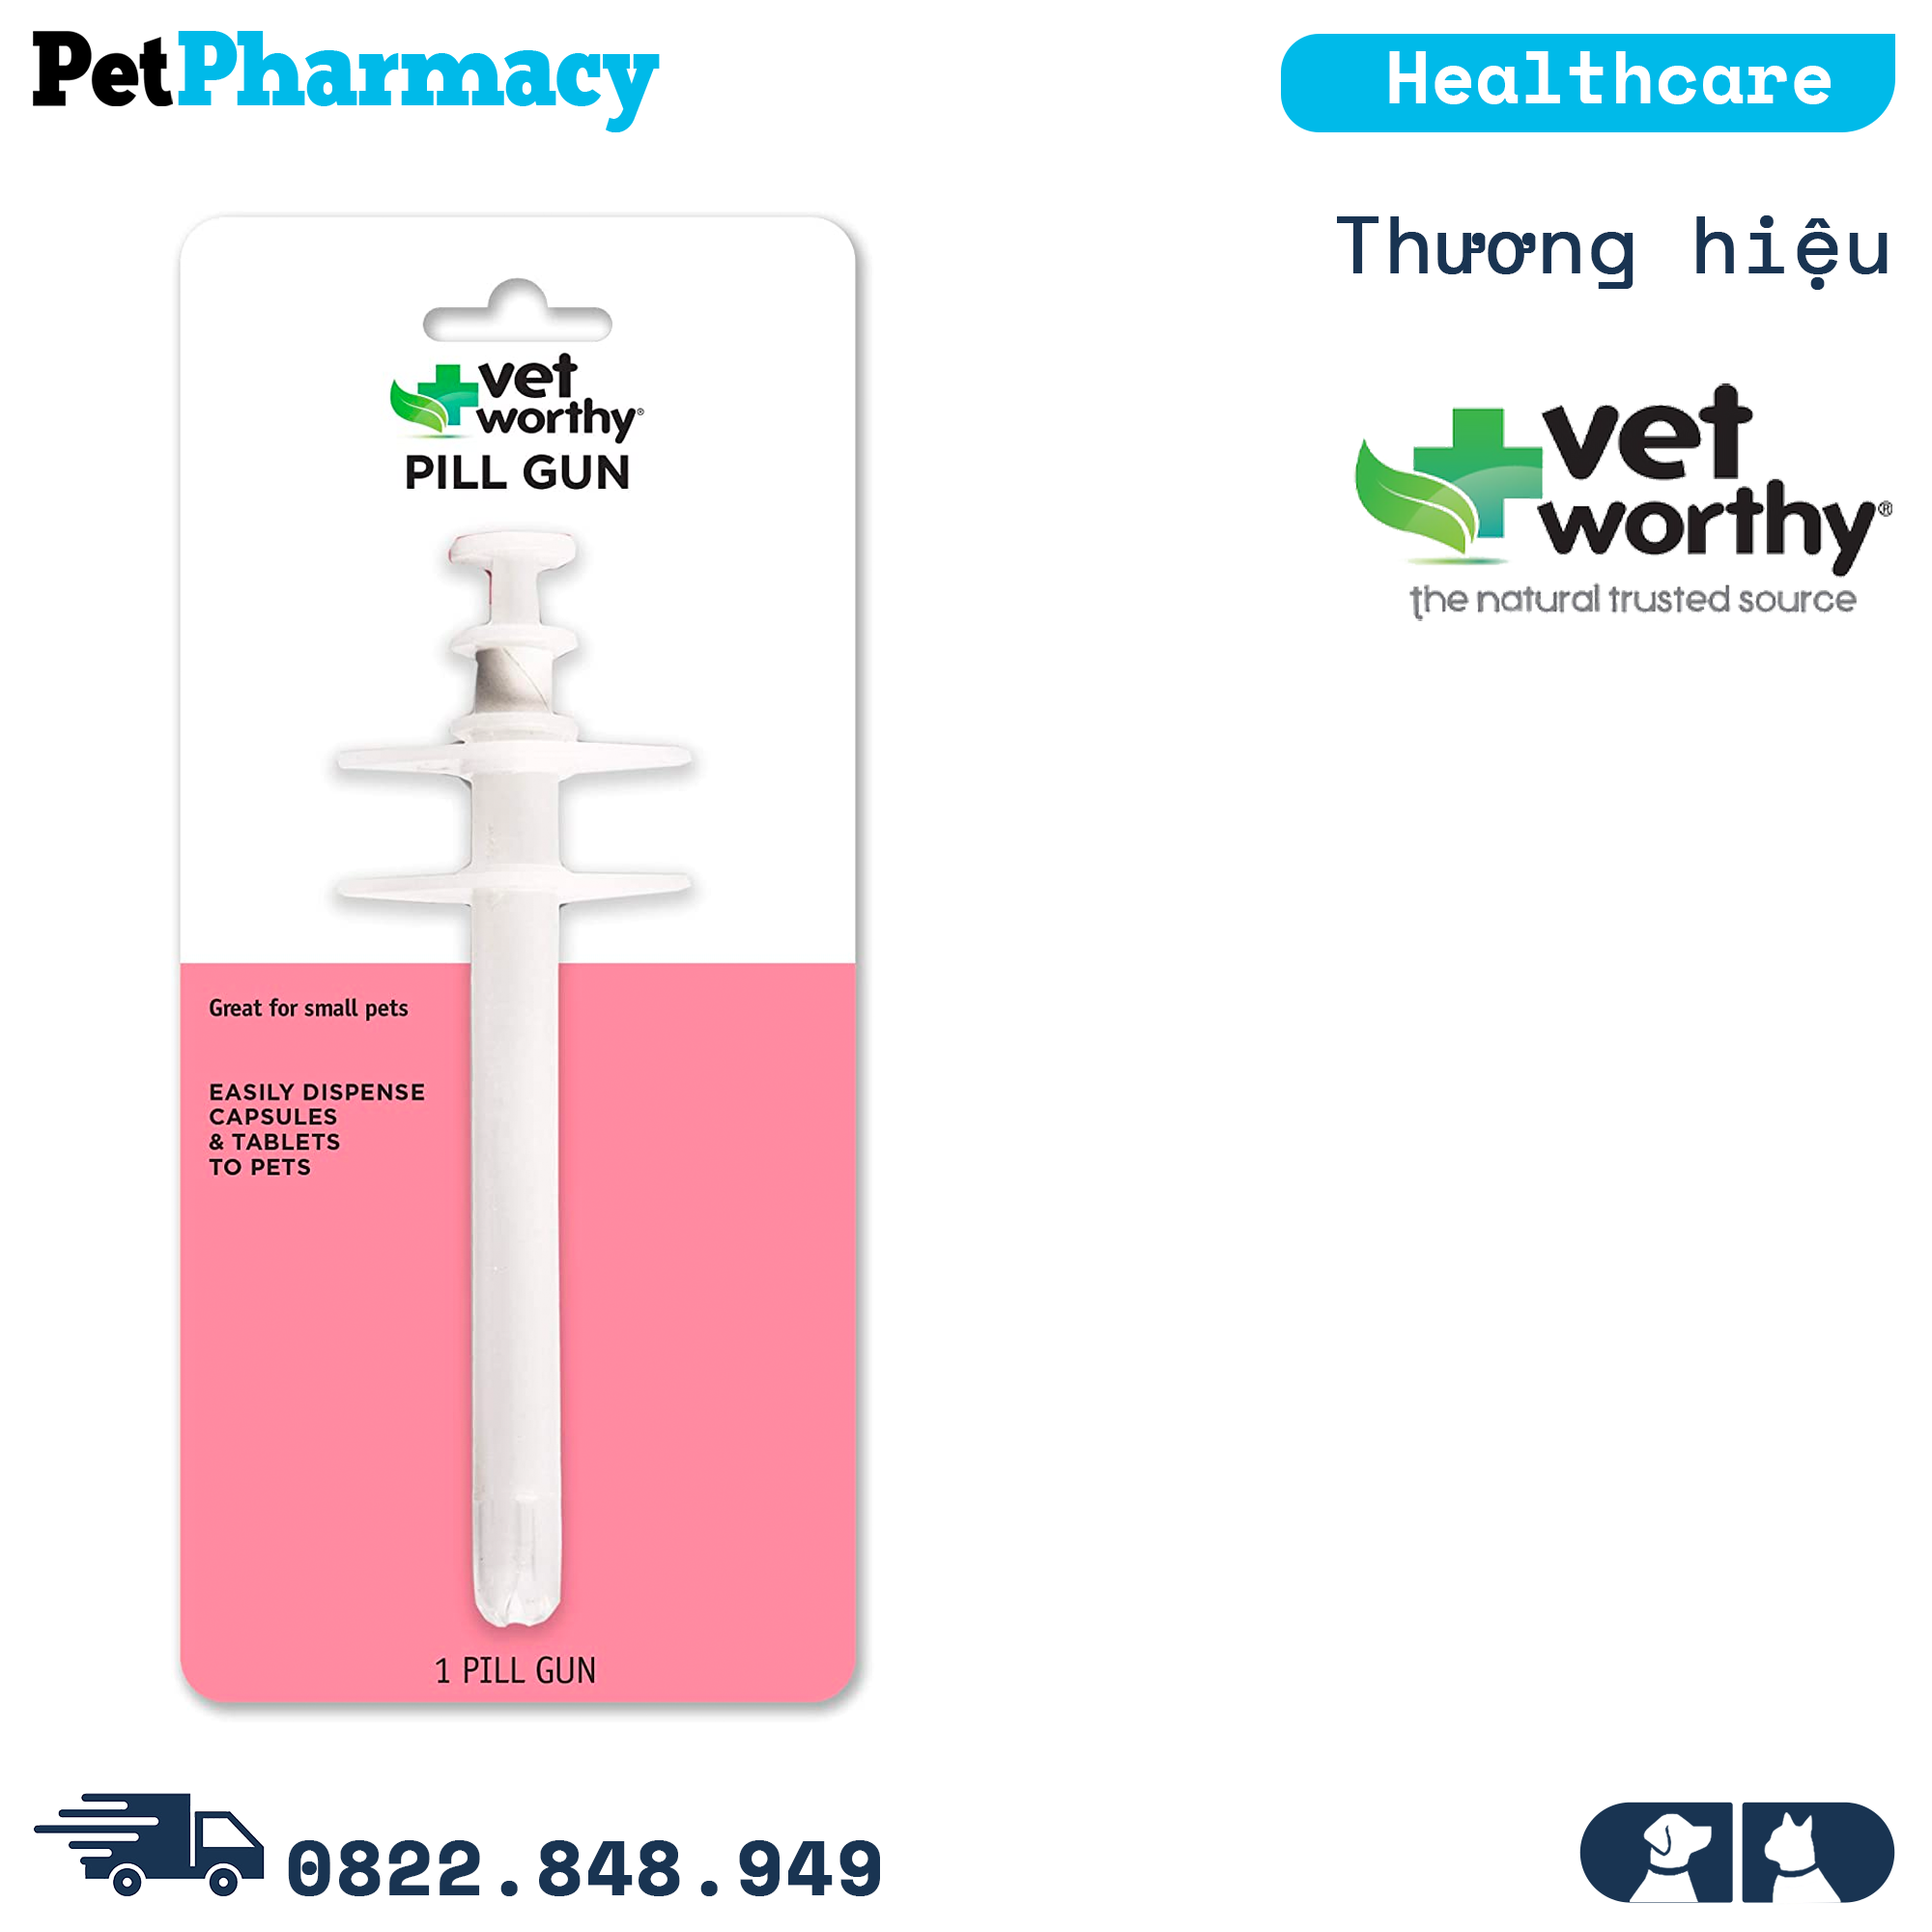  Dụng cụ bơm thuốc Vet Worthy Pill Gun Medicine - hỗ trợ cho thú cưng uống thuốc dạng viên PetPharmacy 